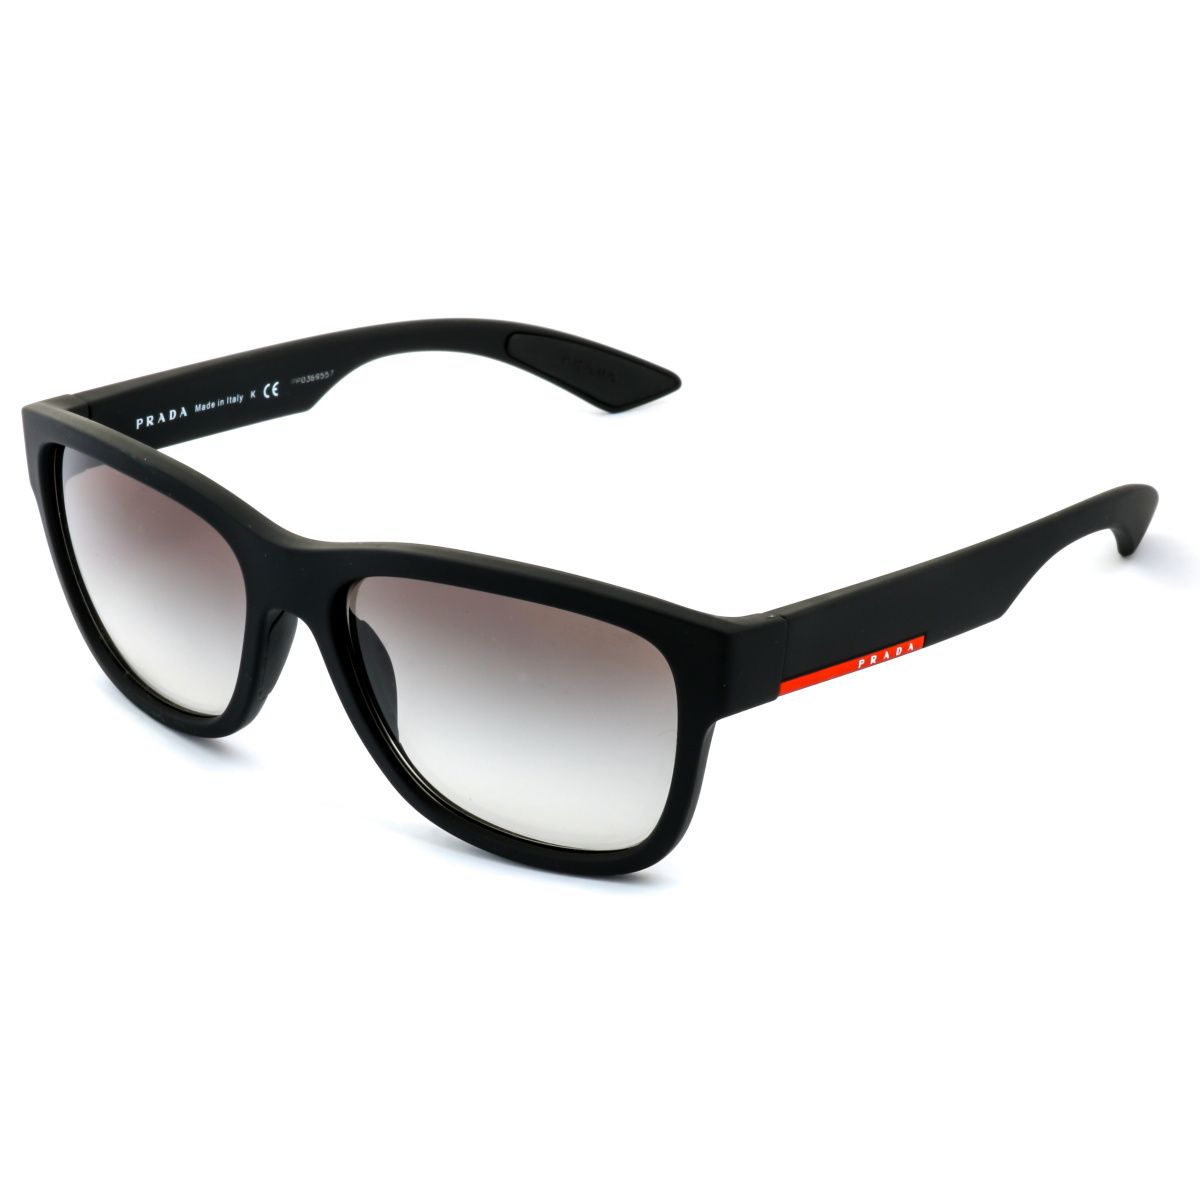 PS03QS Rectangle Sunglasses DG0A75 - size 57